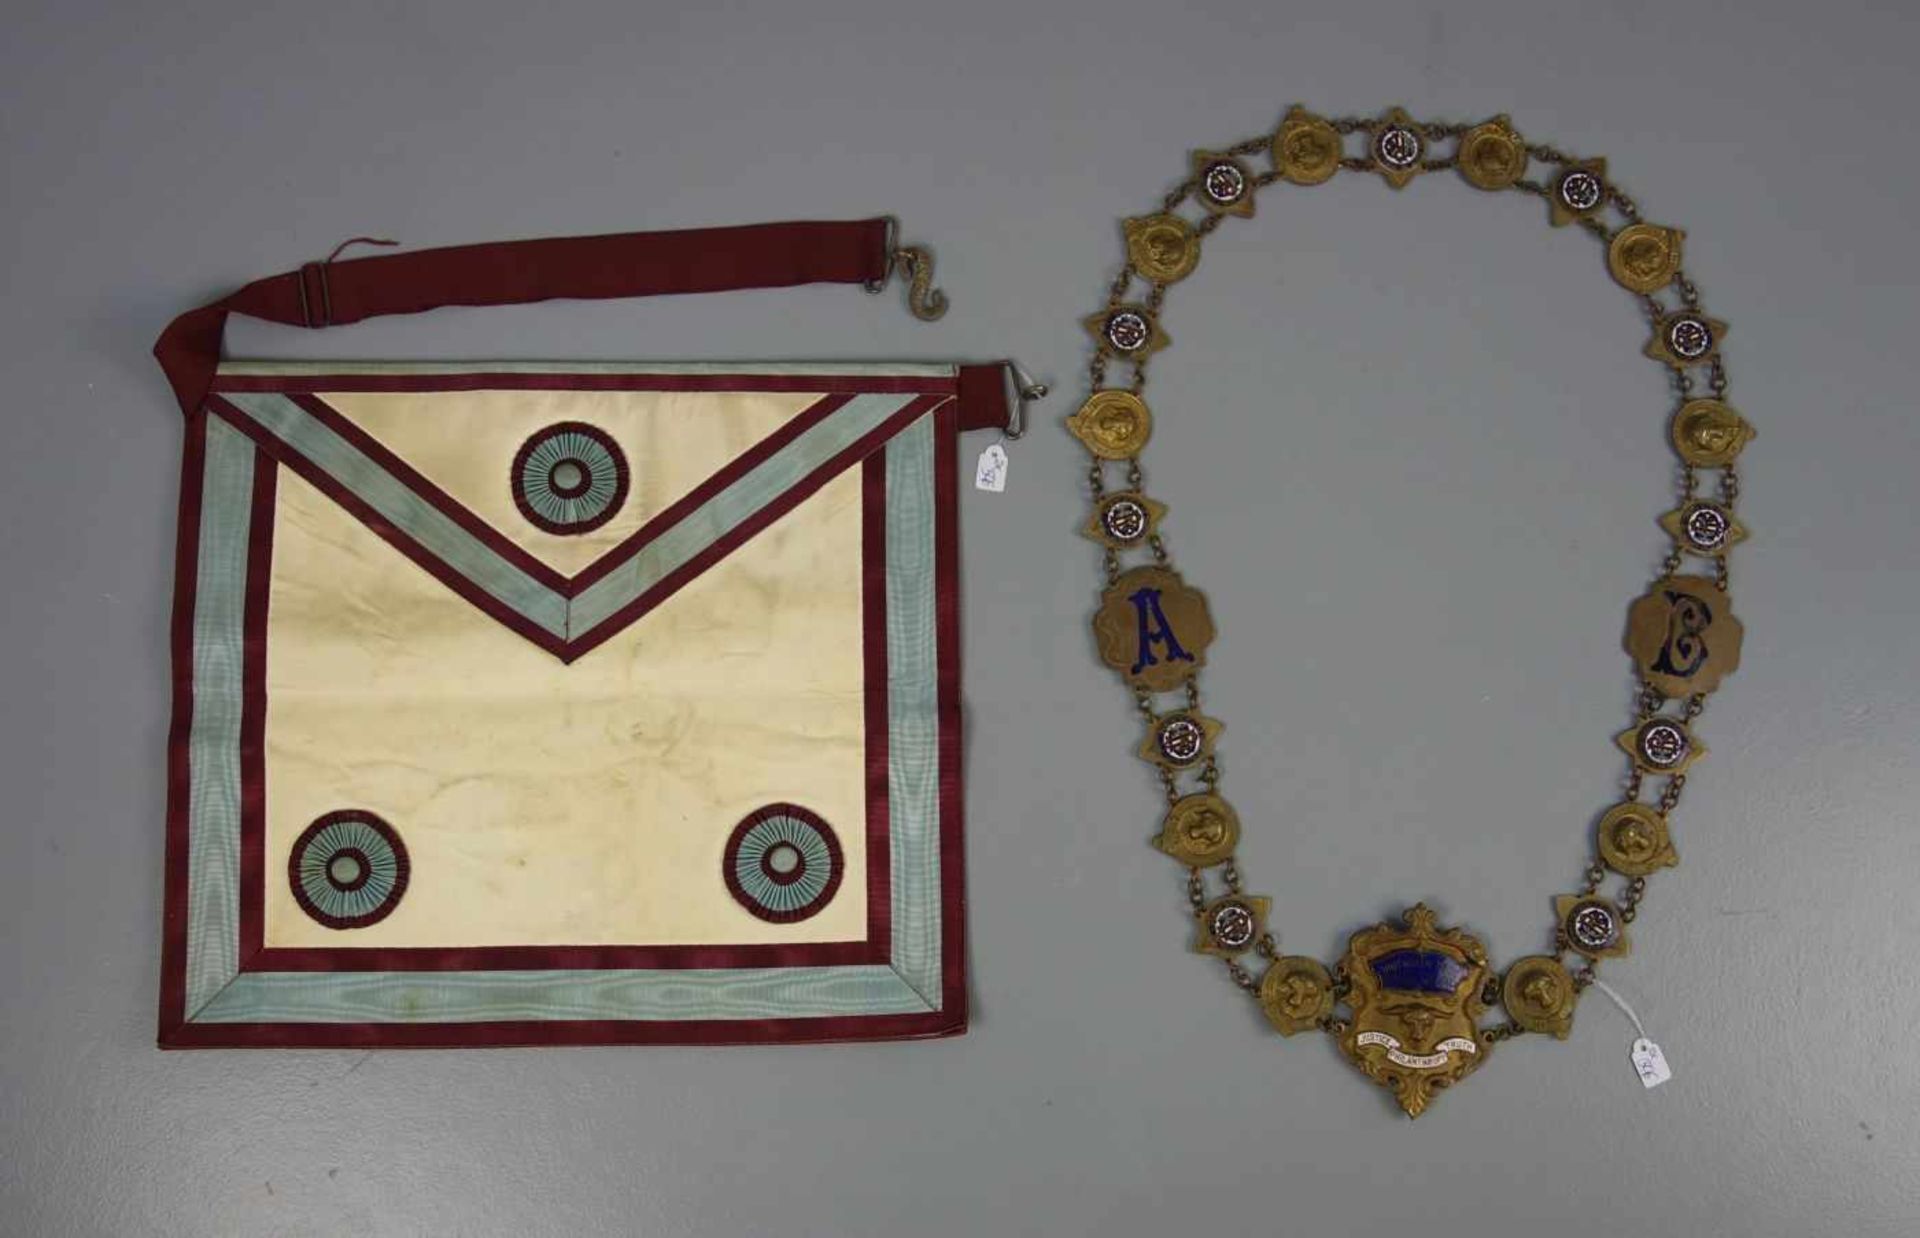 FREIMAURER - KETTE UND FREIMARUER - SCHÜRZE / masonic chain and ceremonial piece.